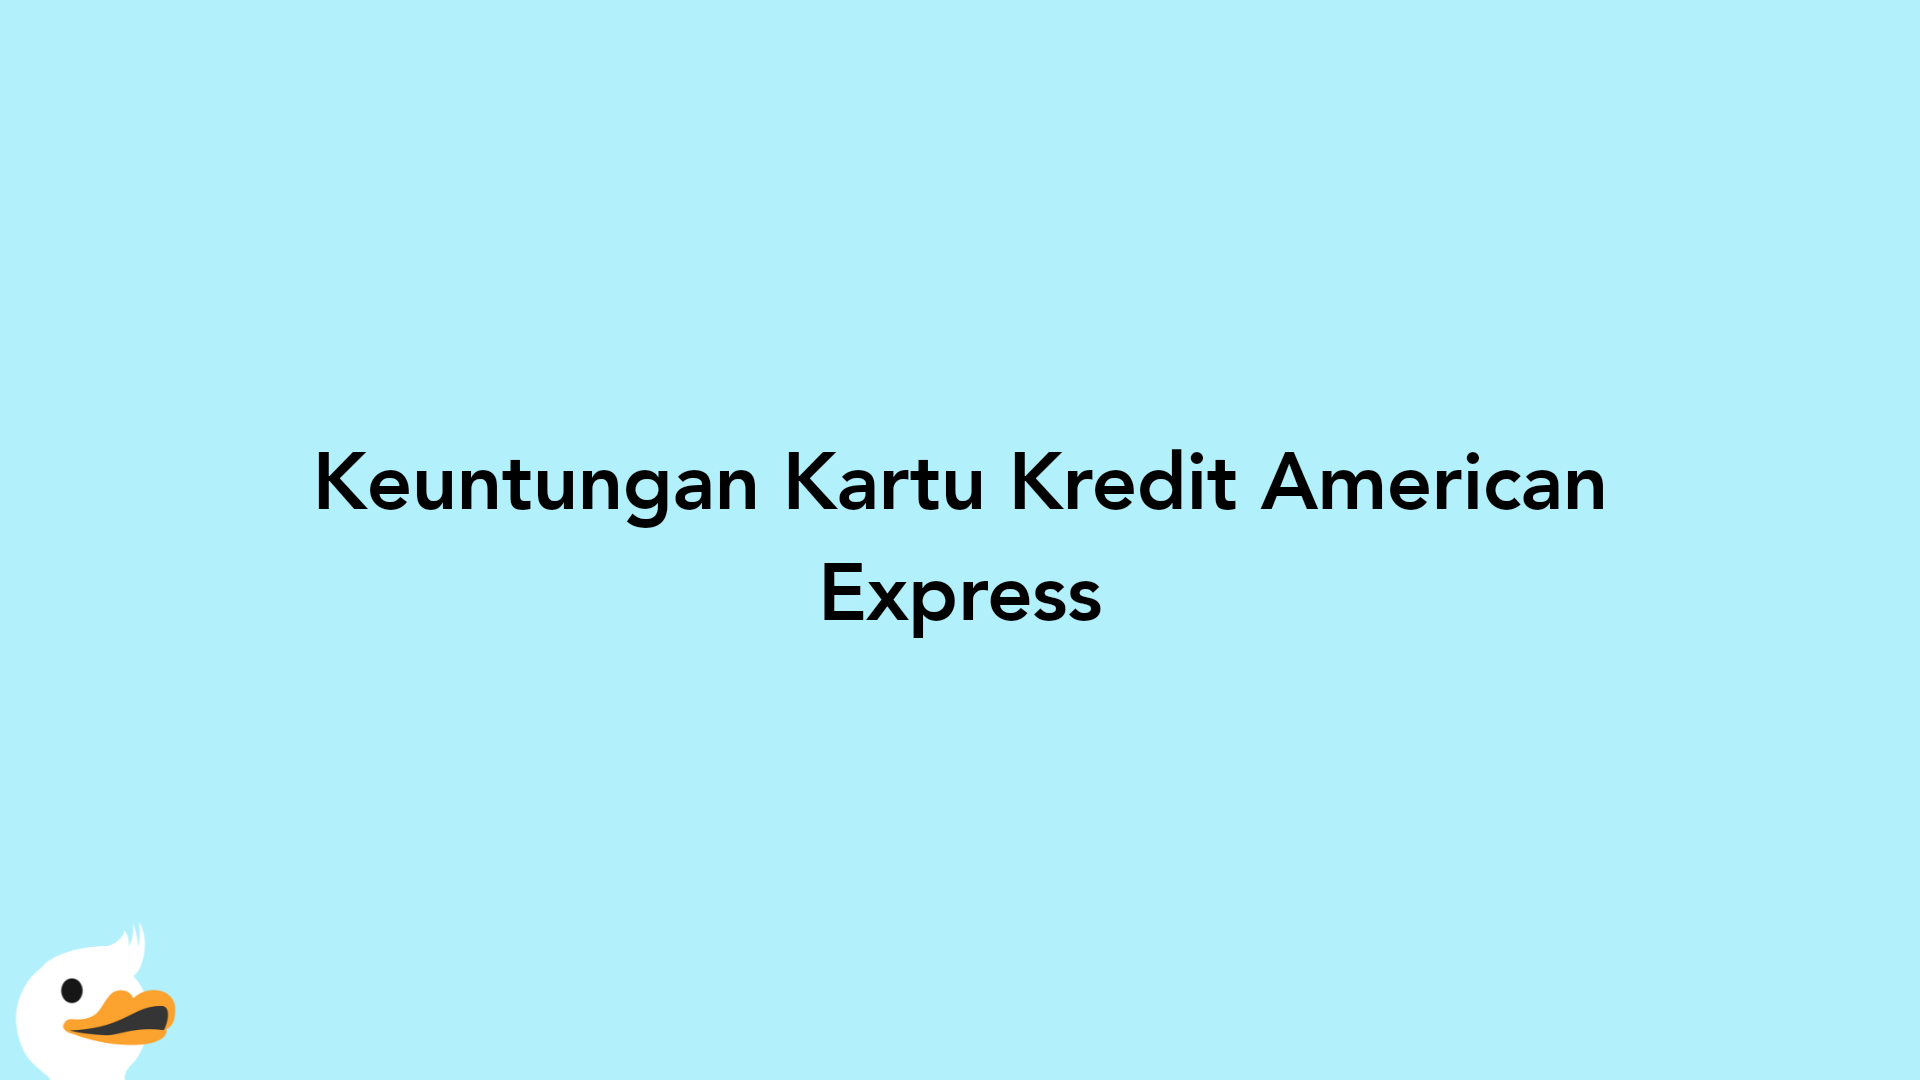 Keuntungan Kartu Kredit American Express